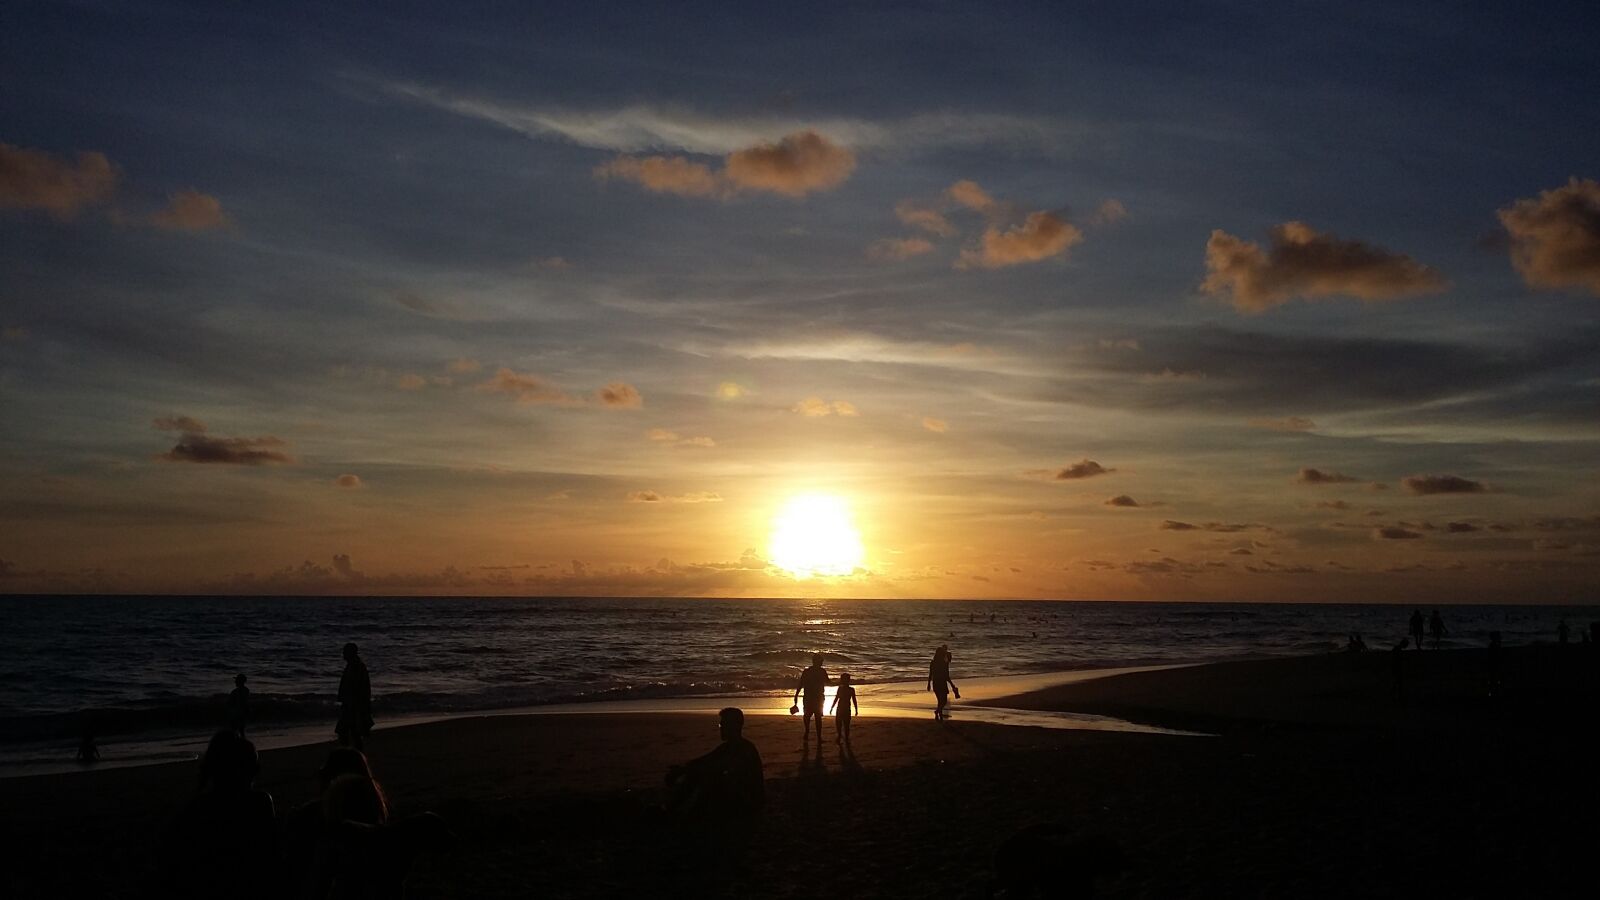 Samsung Galaxy A3 sample photo. Bali, sunset, sky photography